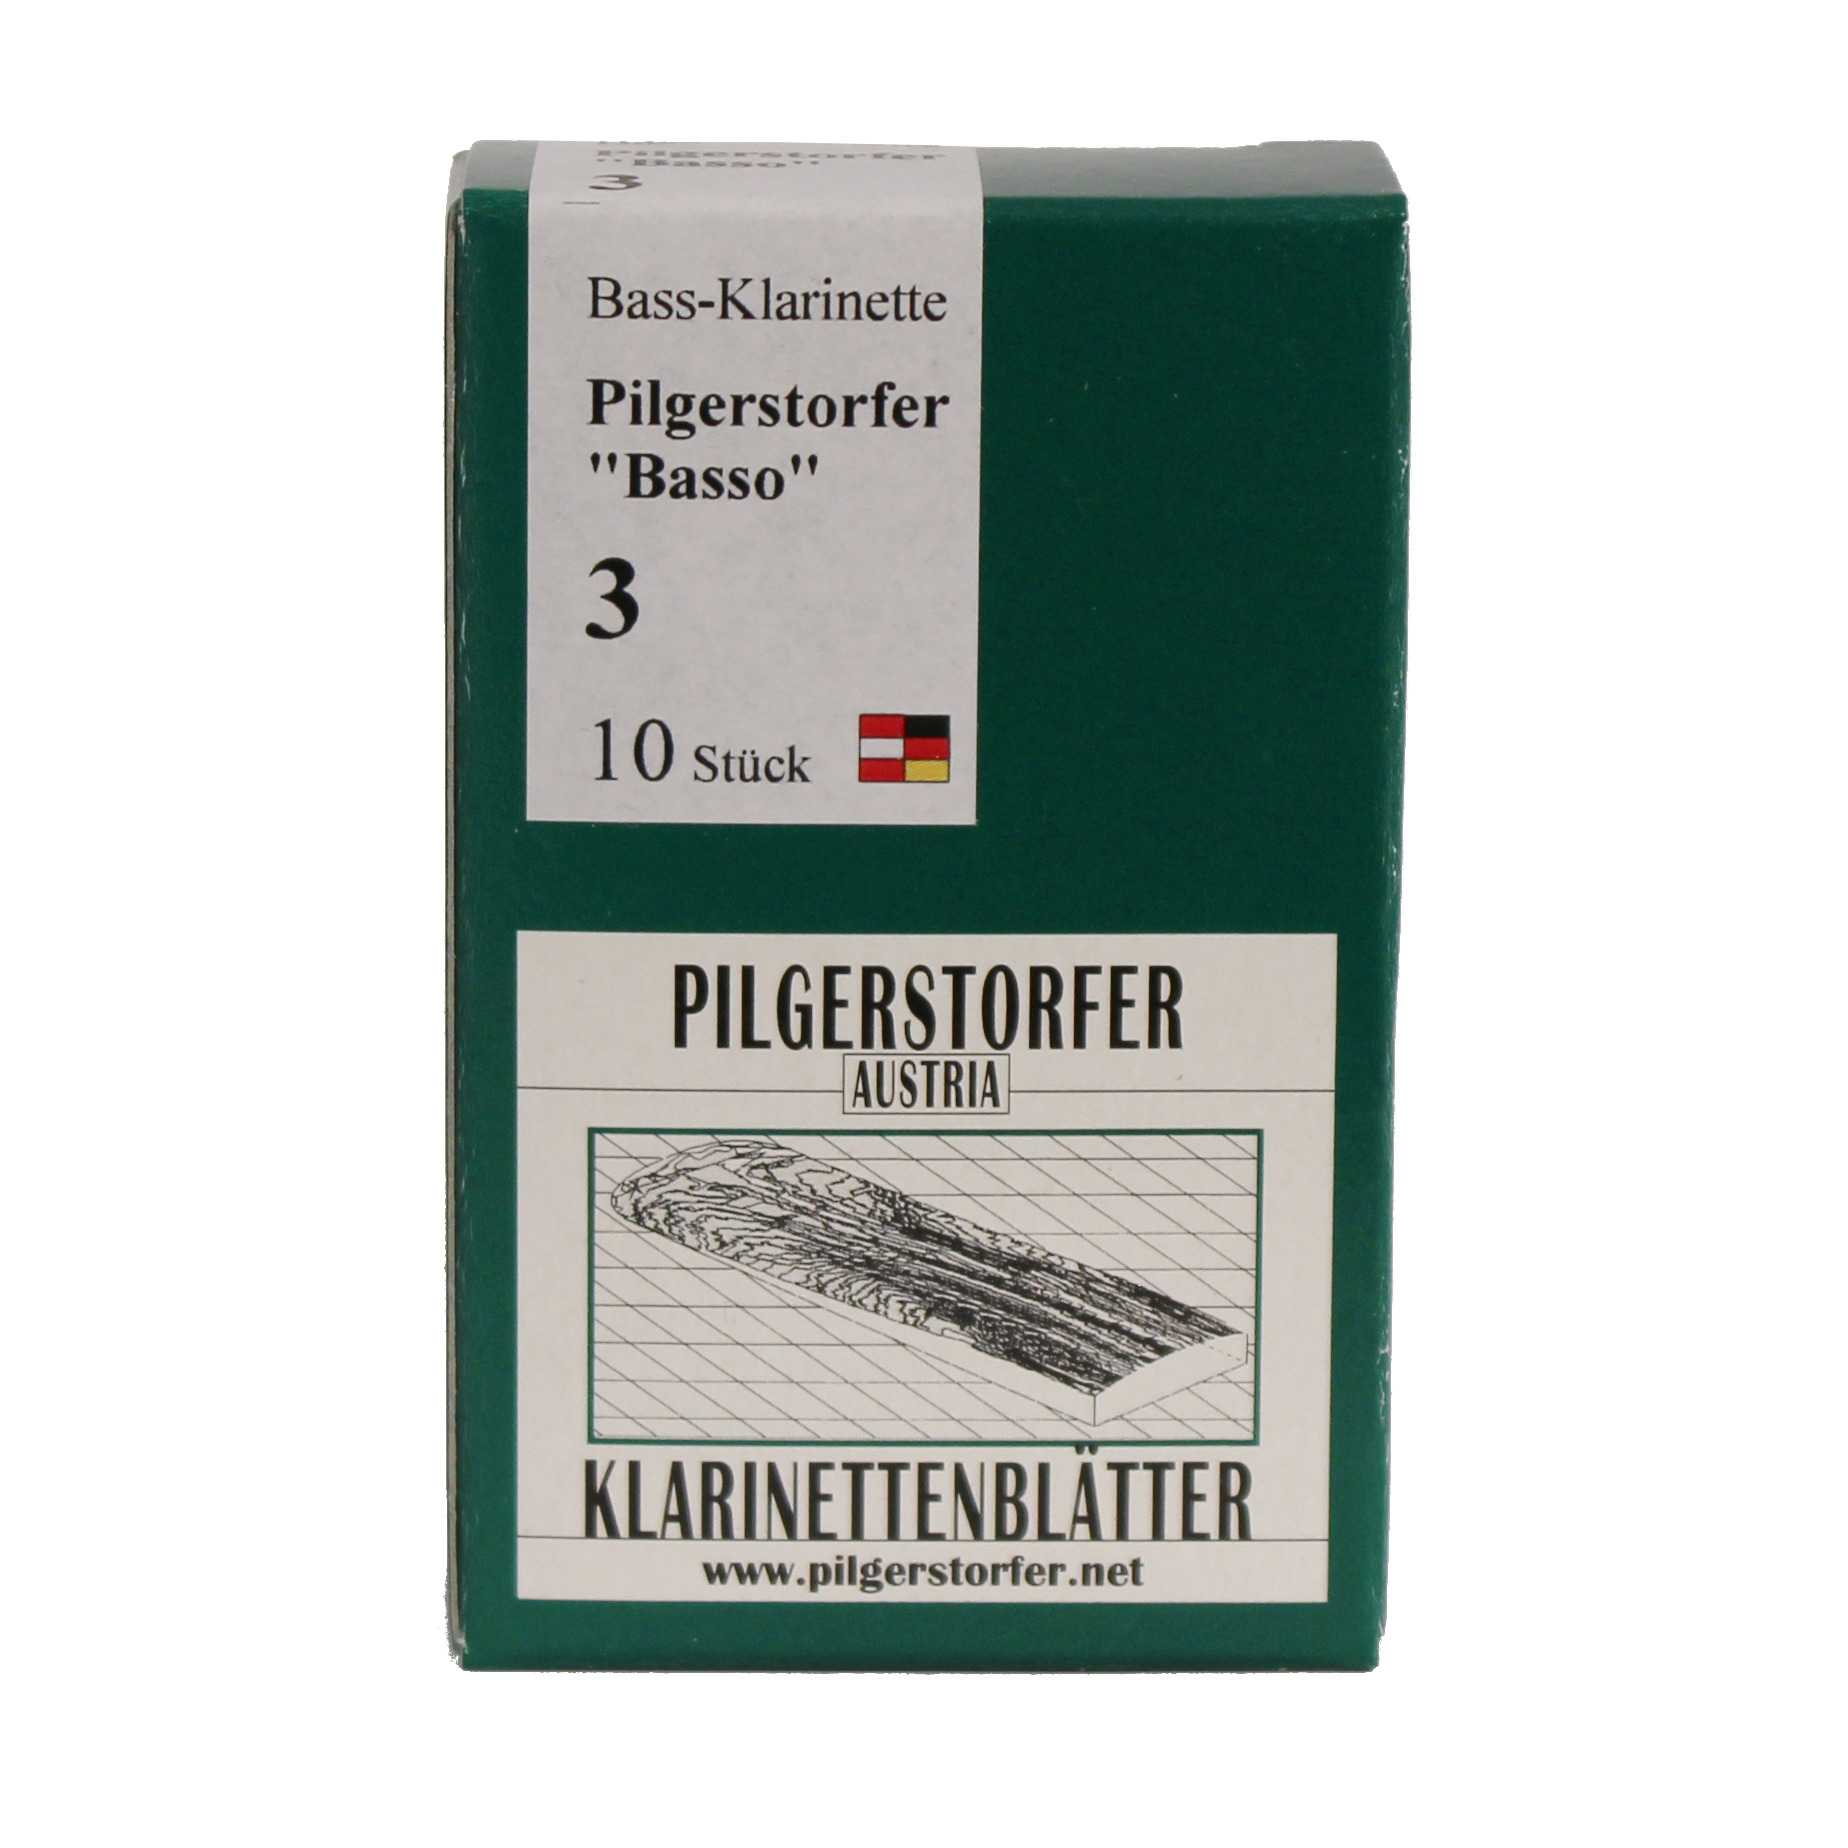 155-5_Pilgerstorfer-Bass-dt.jpg